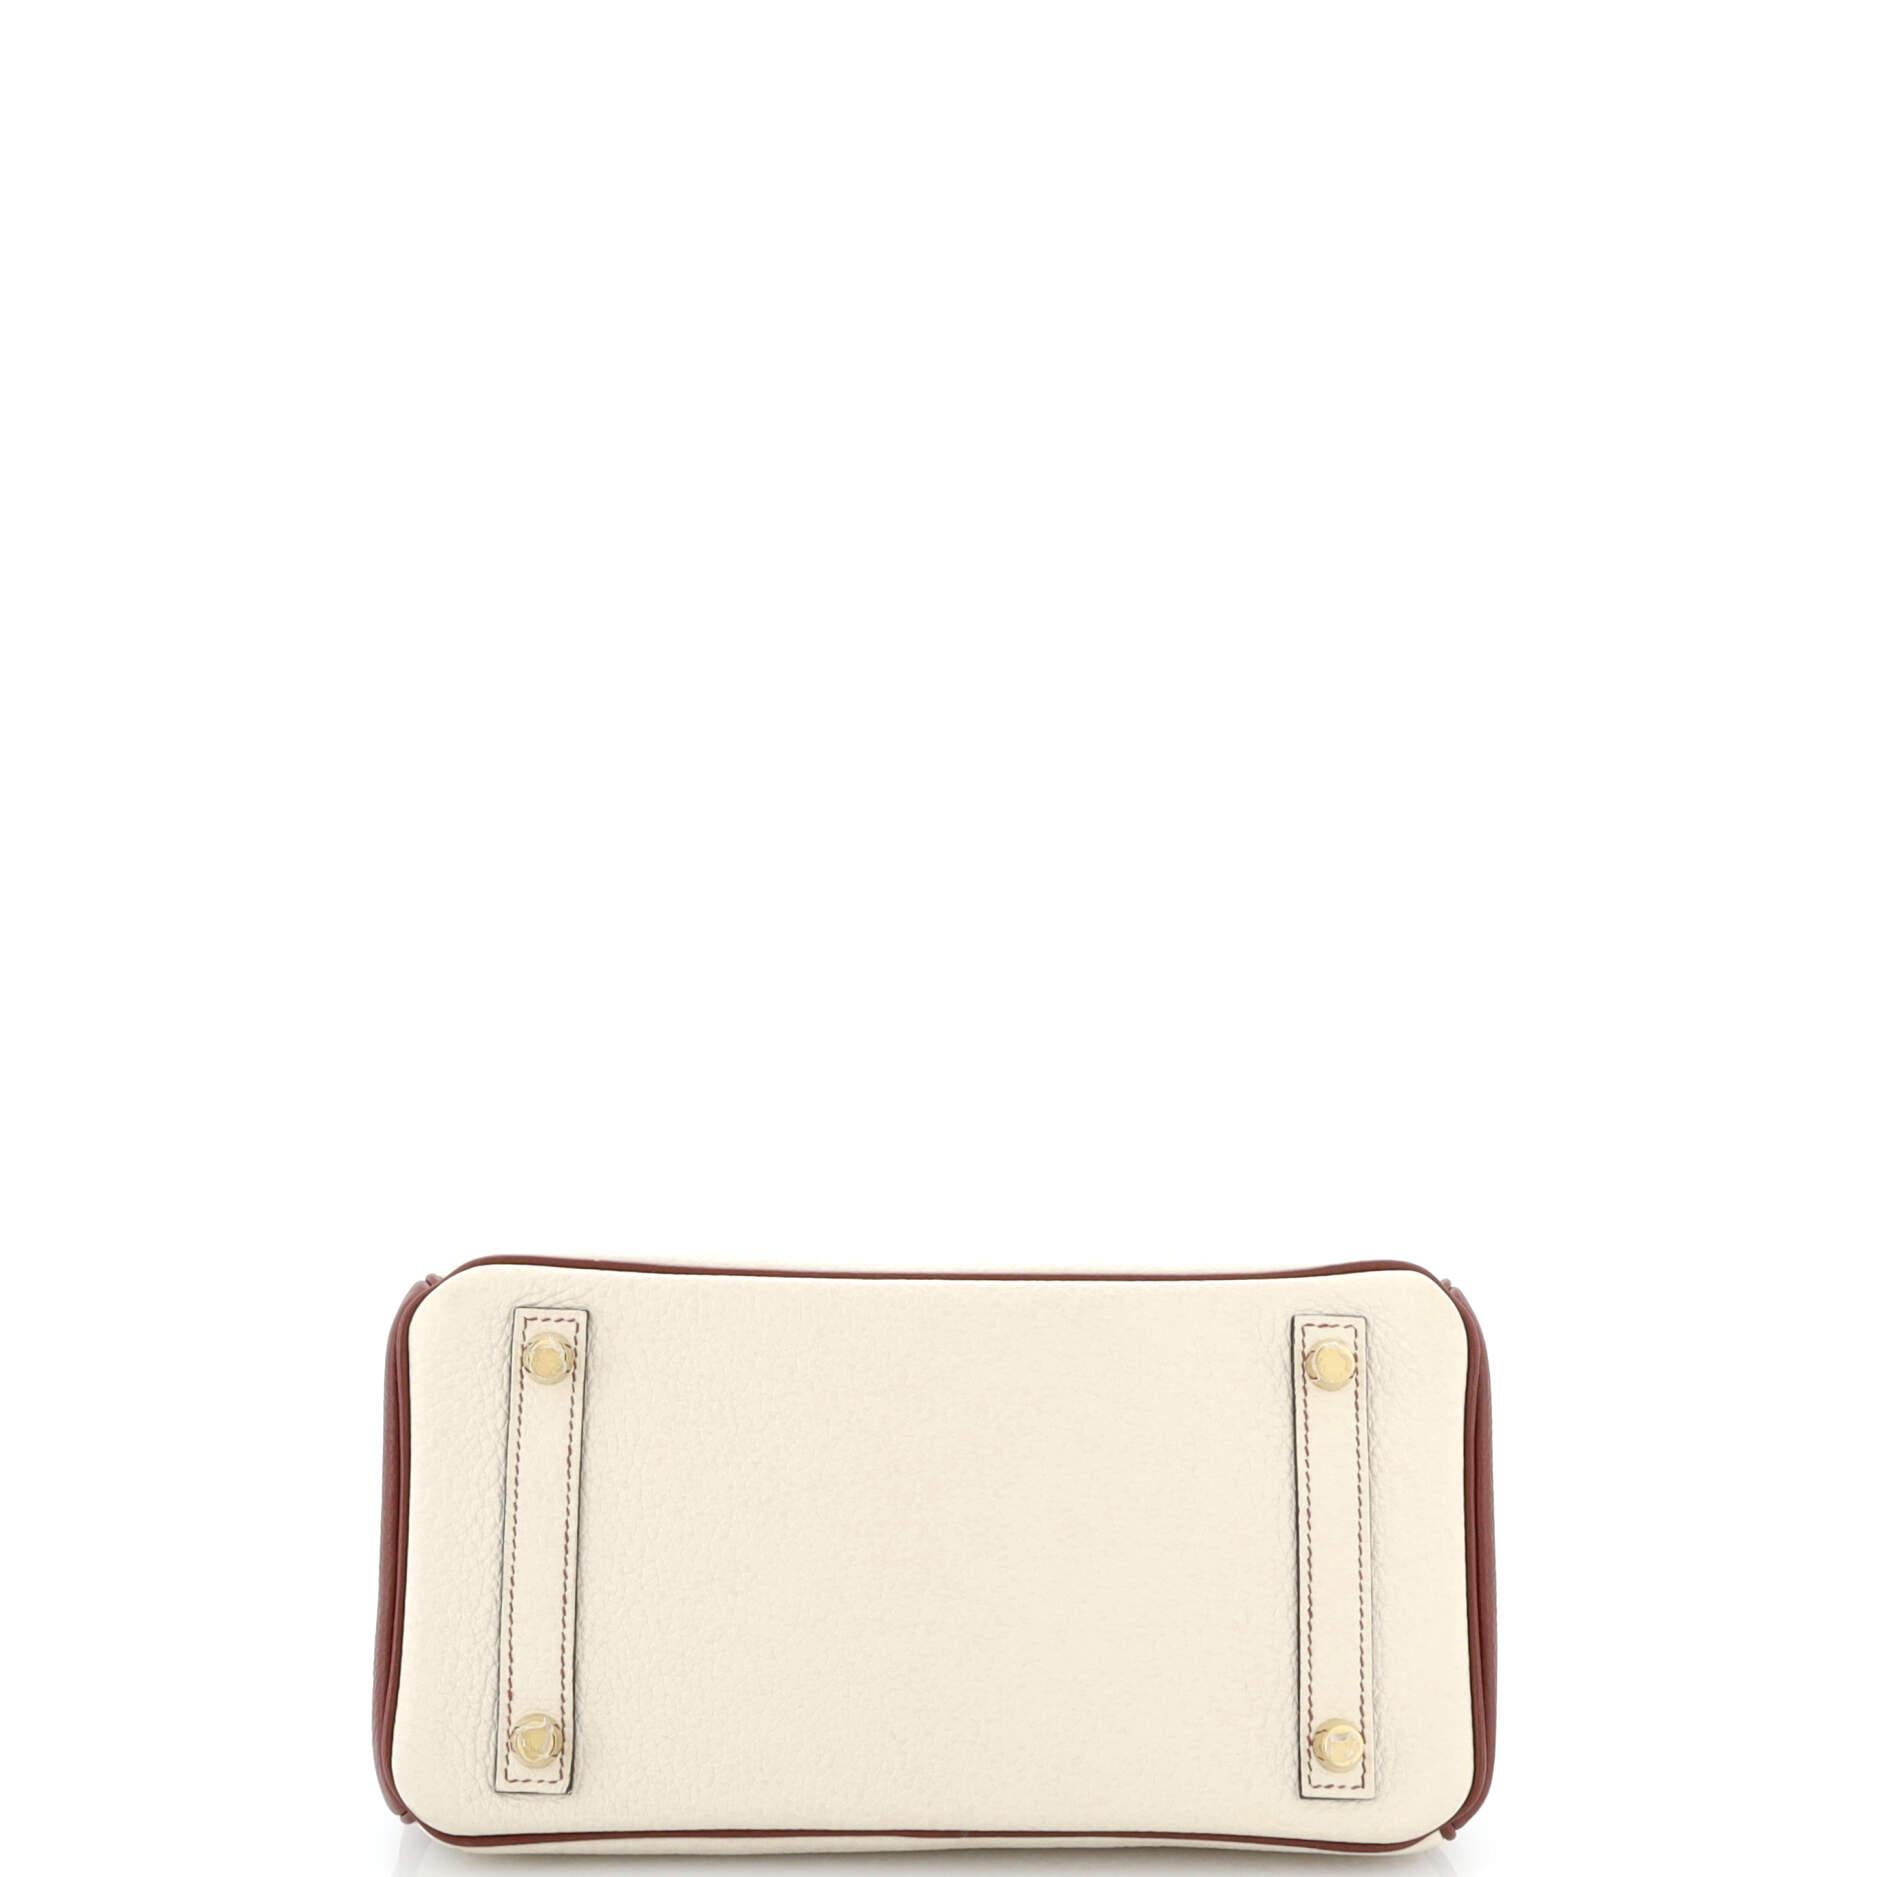 Hermes Birkin Handbag Bicolor Clemence with Brushed Gold Hardware 25 For Sale 1